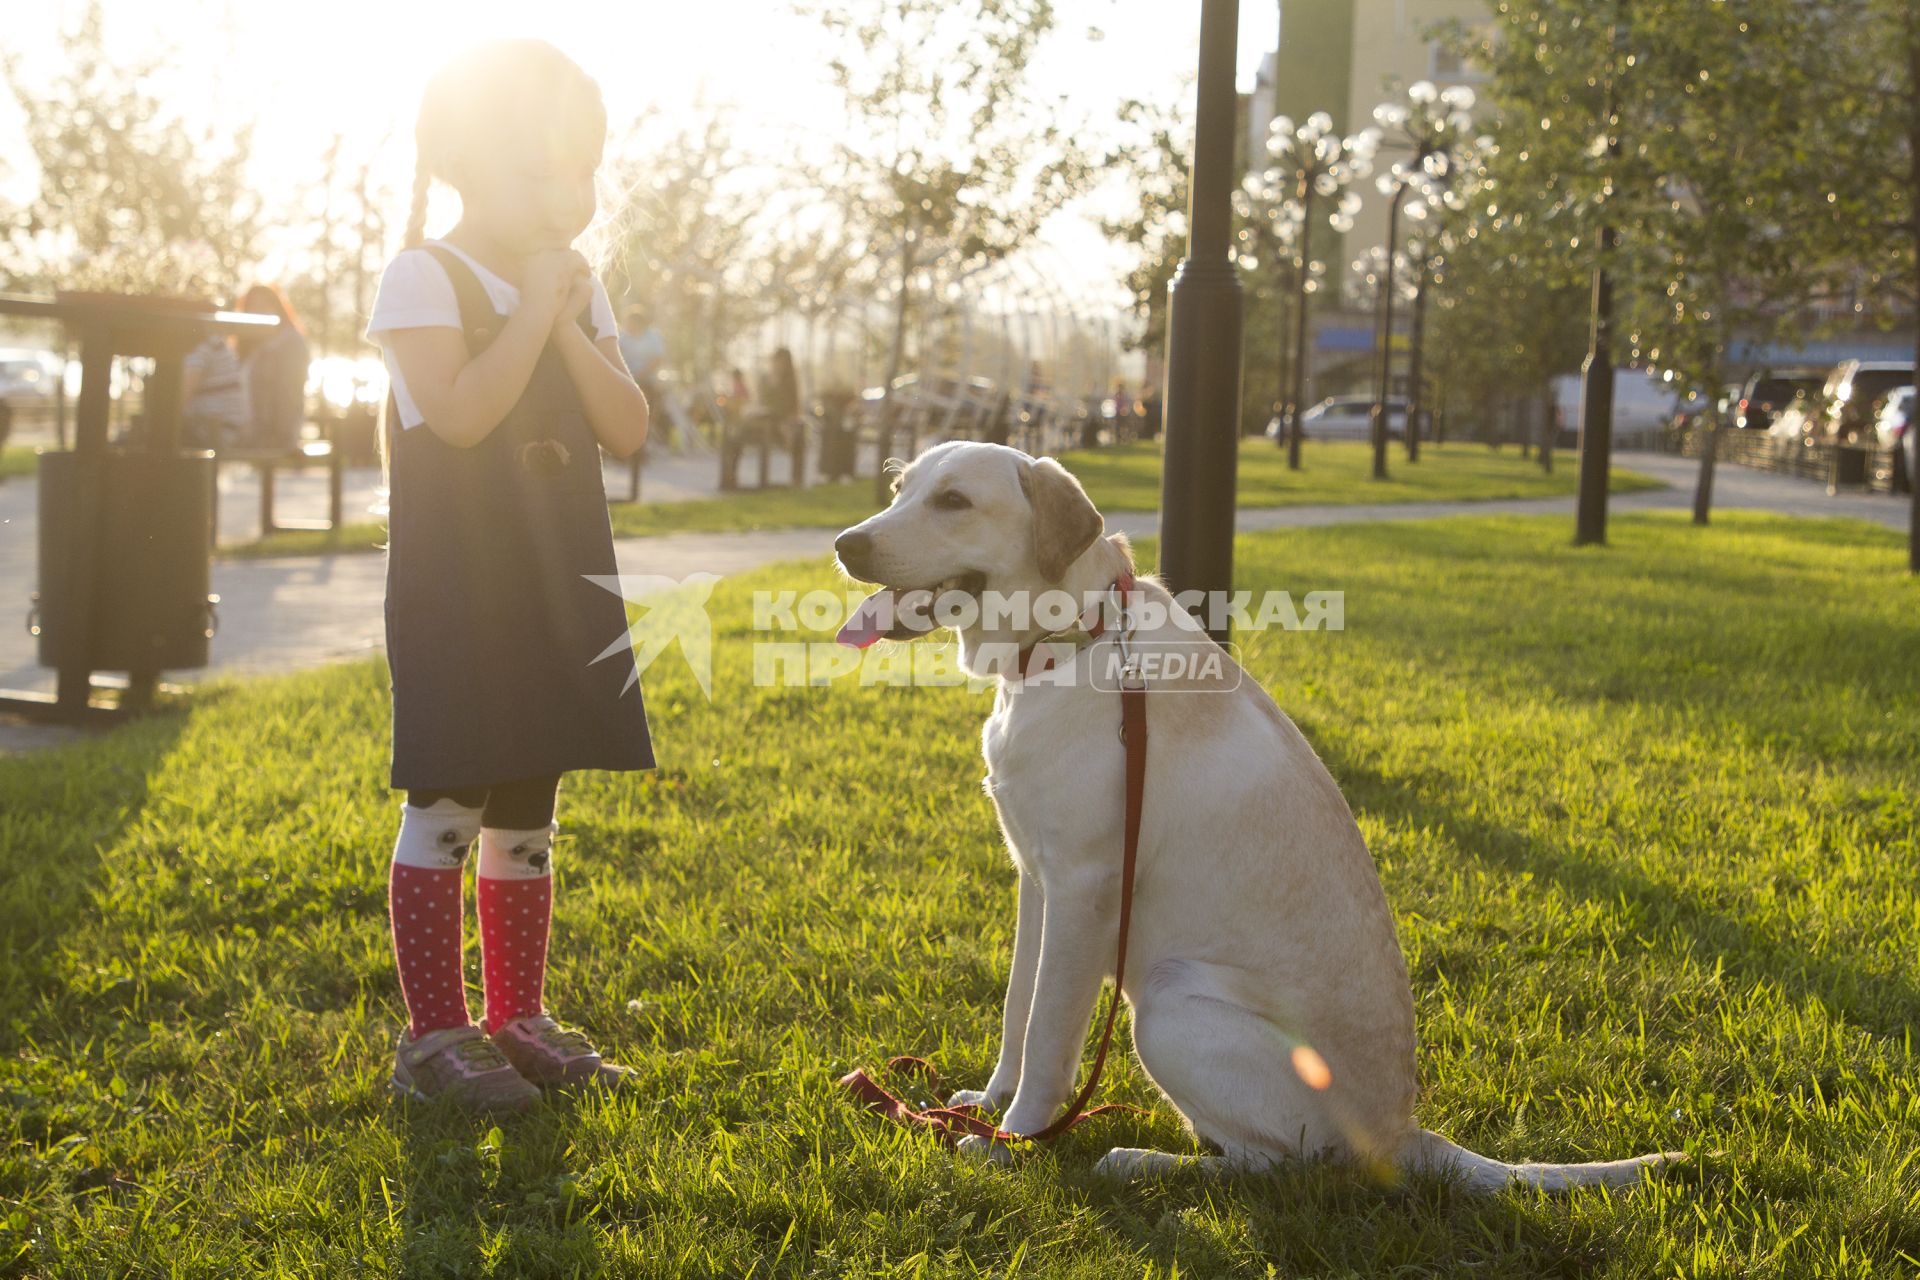 Иркутск.   Девочка с собакой породы лабрадор во  время прогулки.